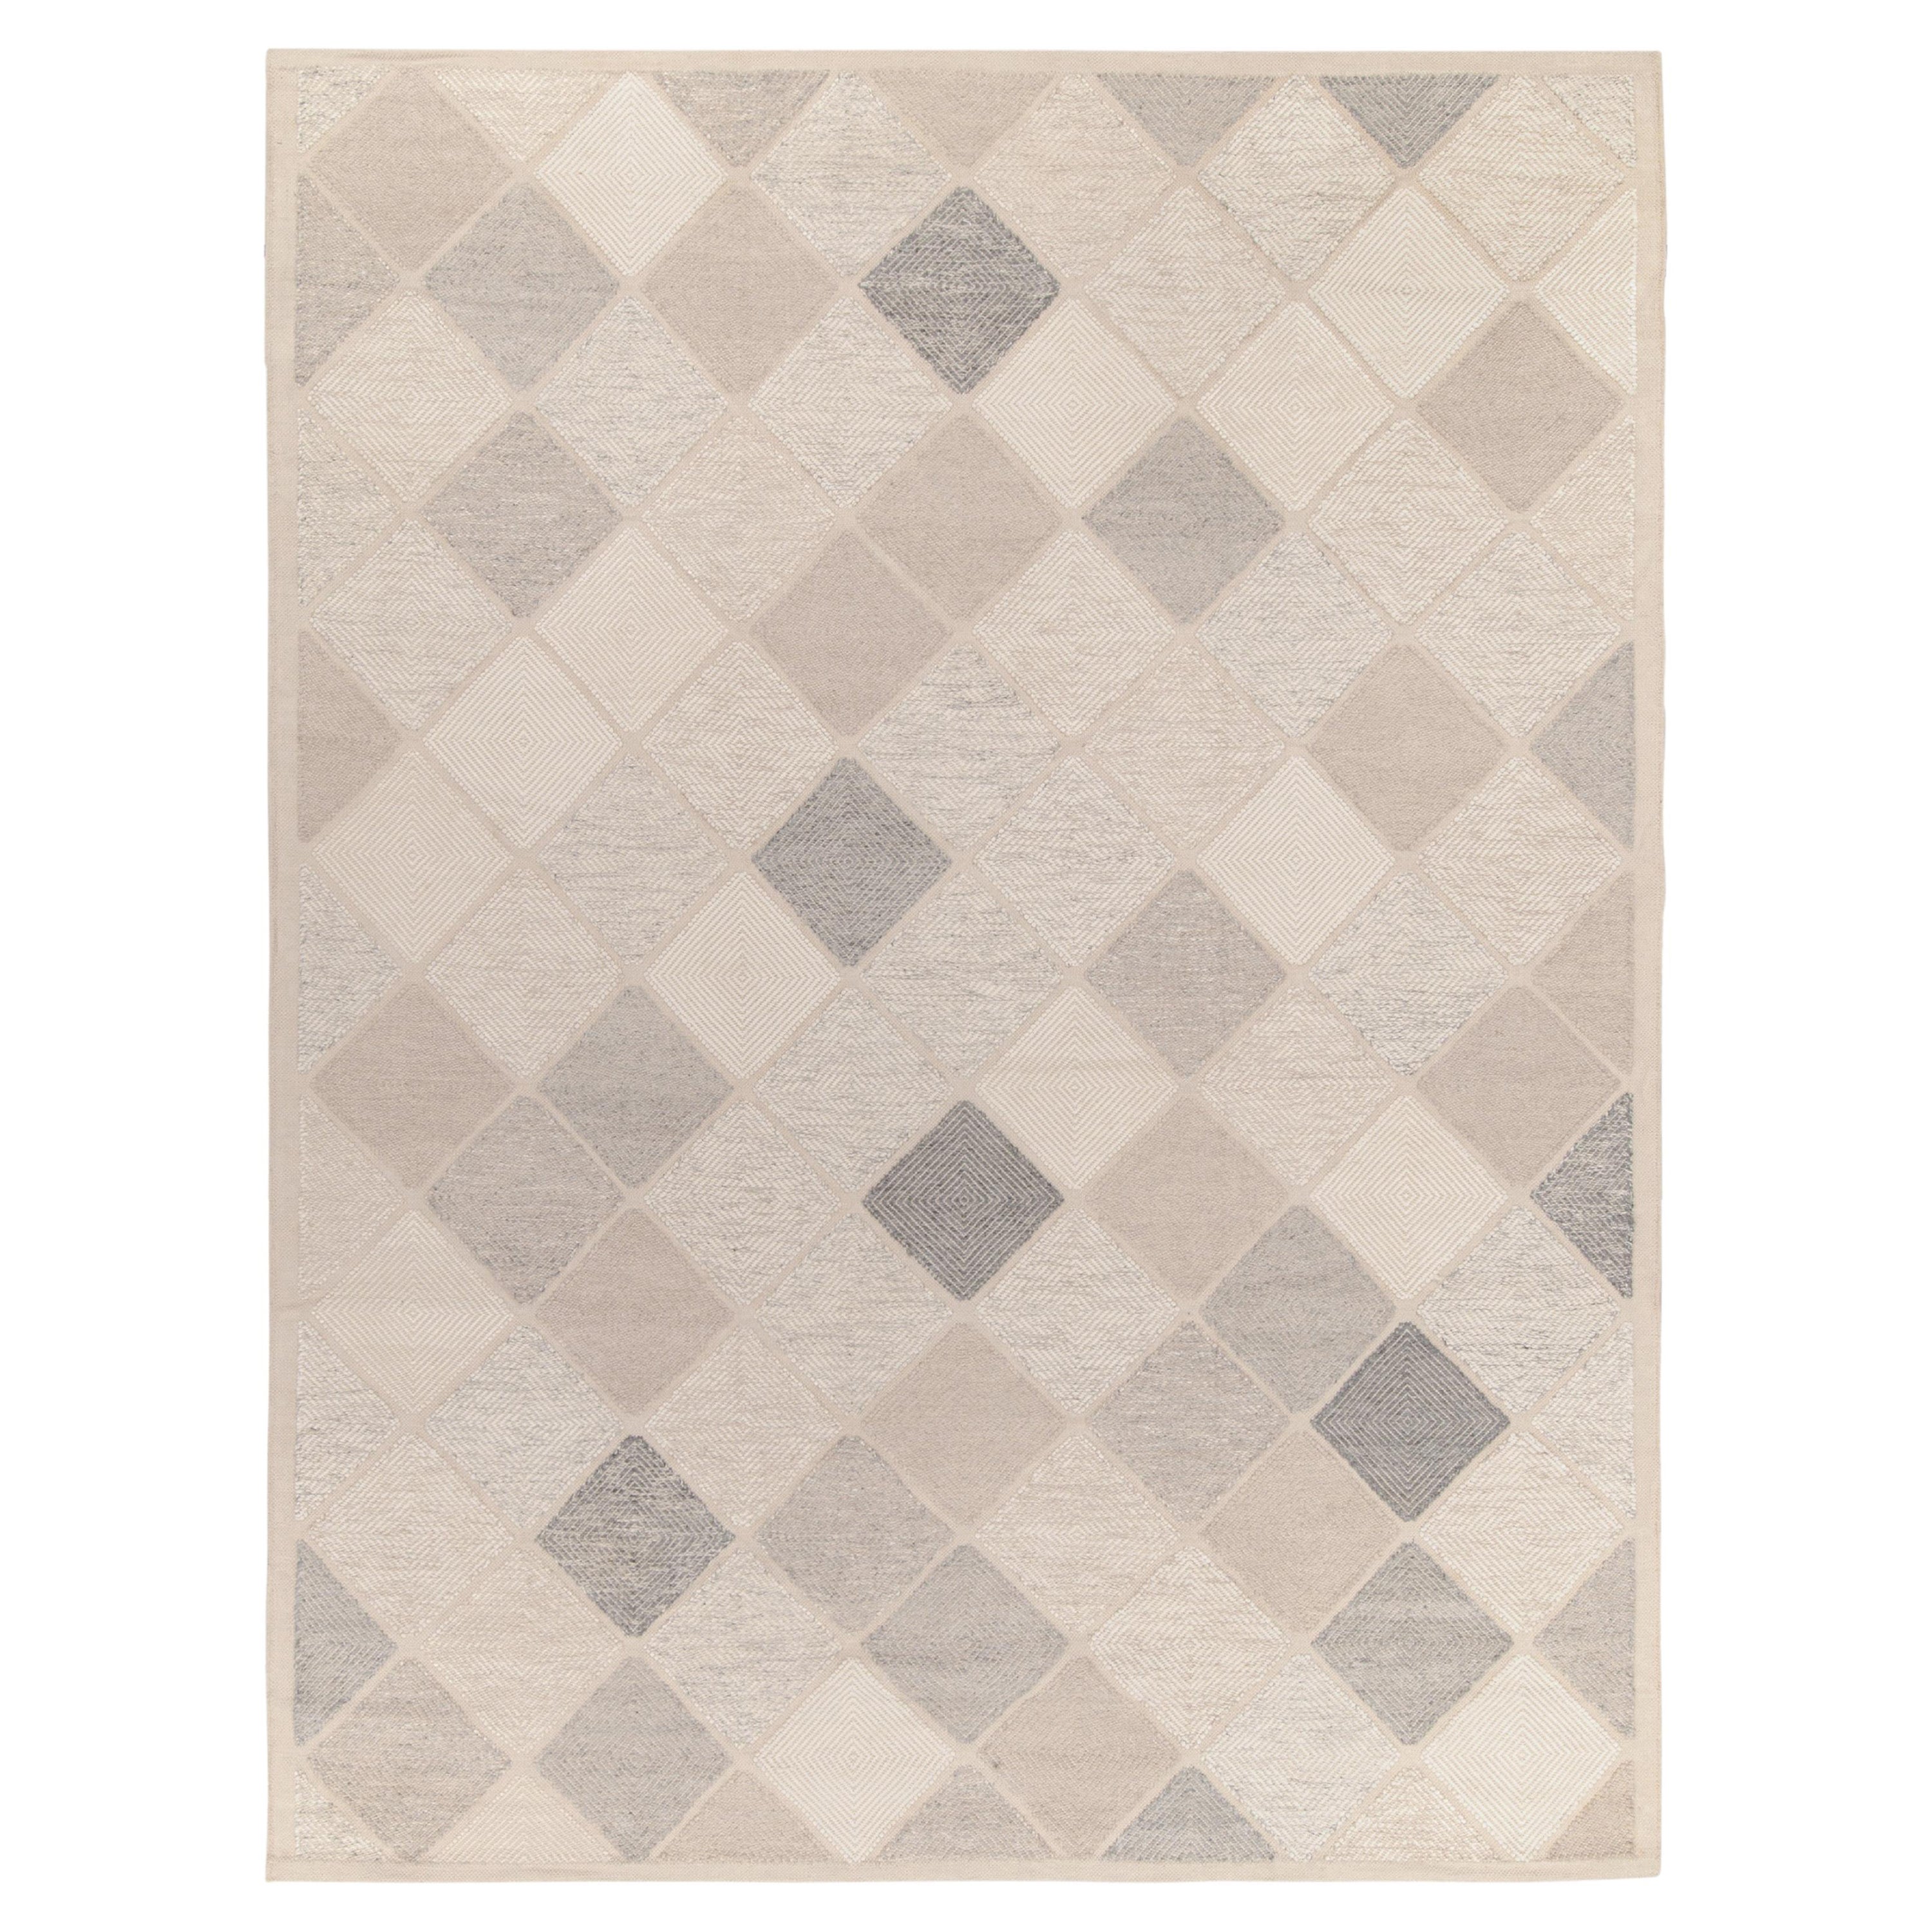 Maßgefertigter Kelim im skandinavischen Stil mit grauem, weißem Diamantmuster von Teppich & Kilim